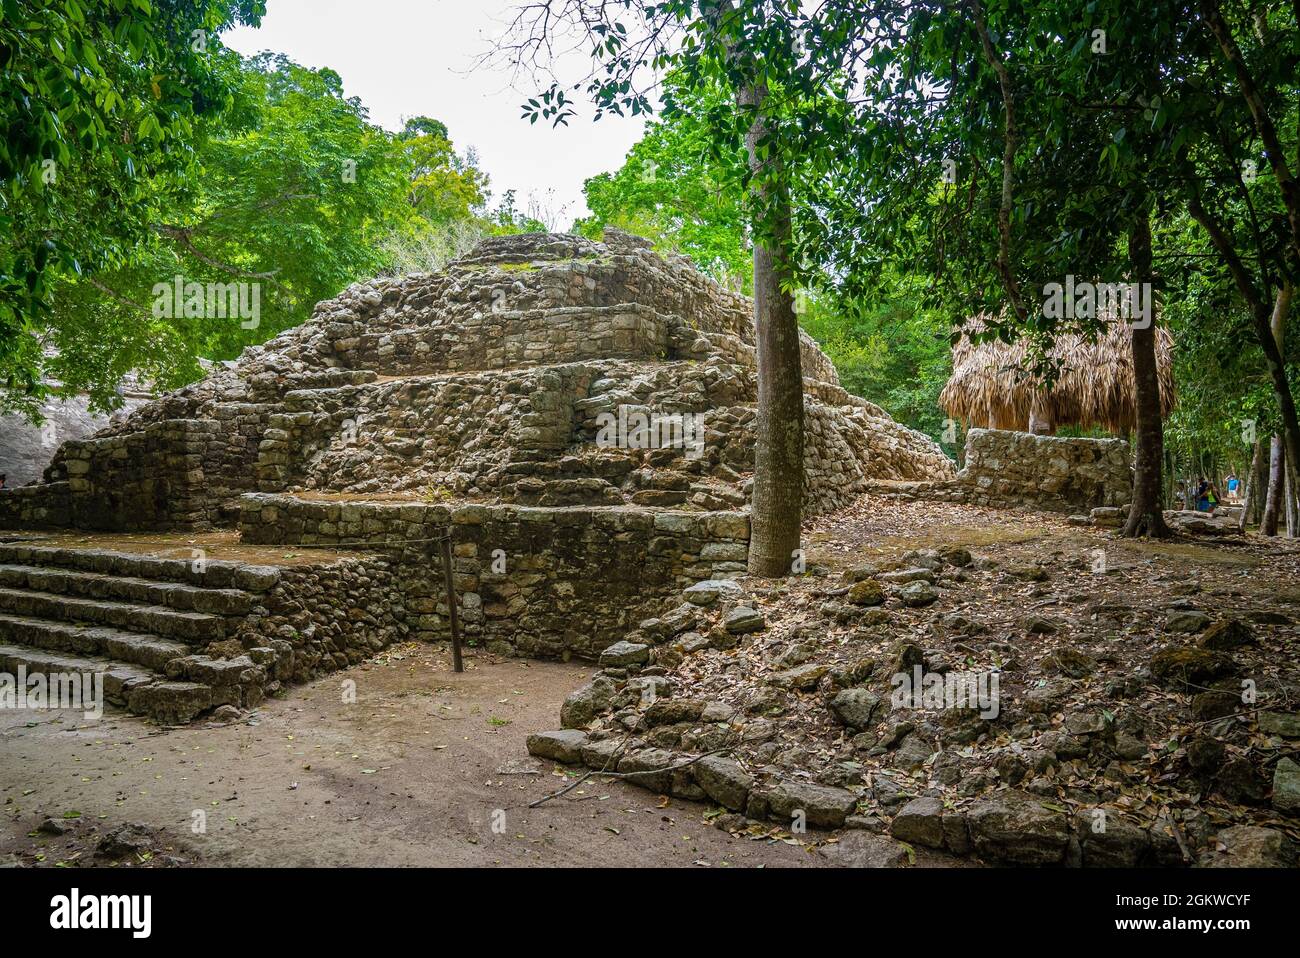 Nohoch Mul Pyramid at the ancient ruins of the Mayan city Coba Stock Photo